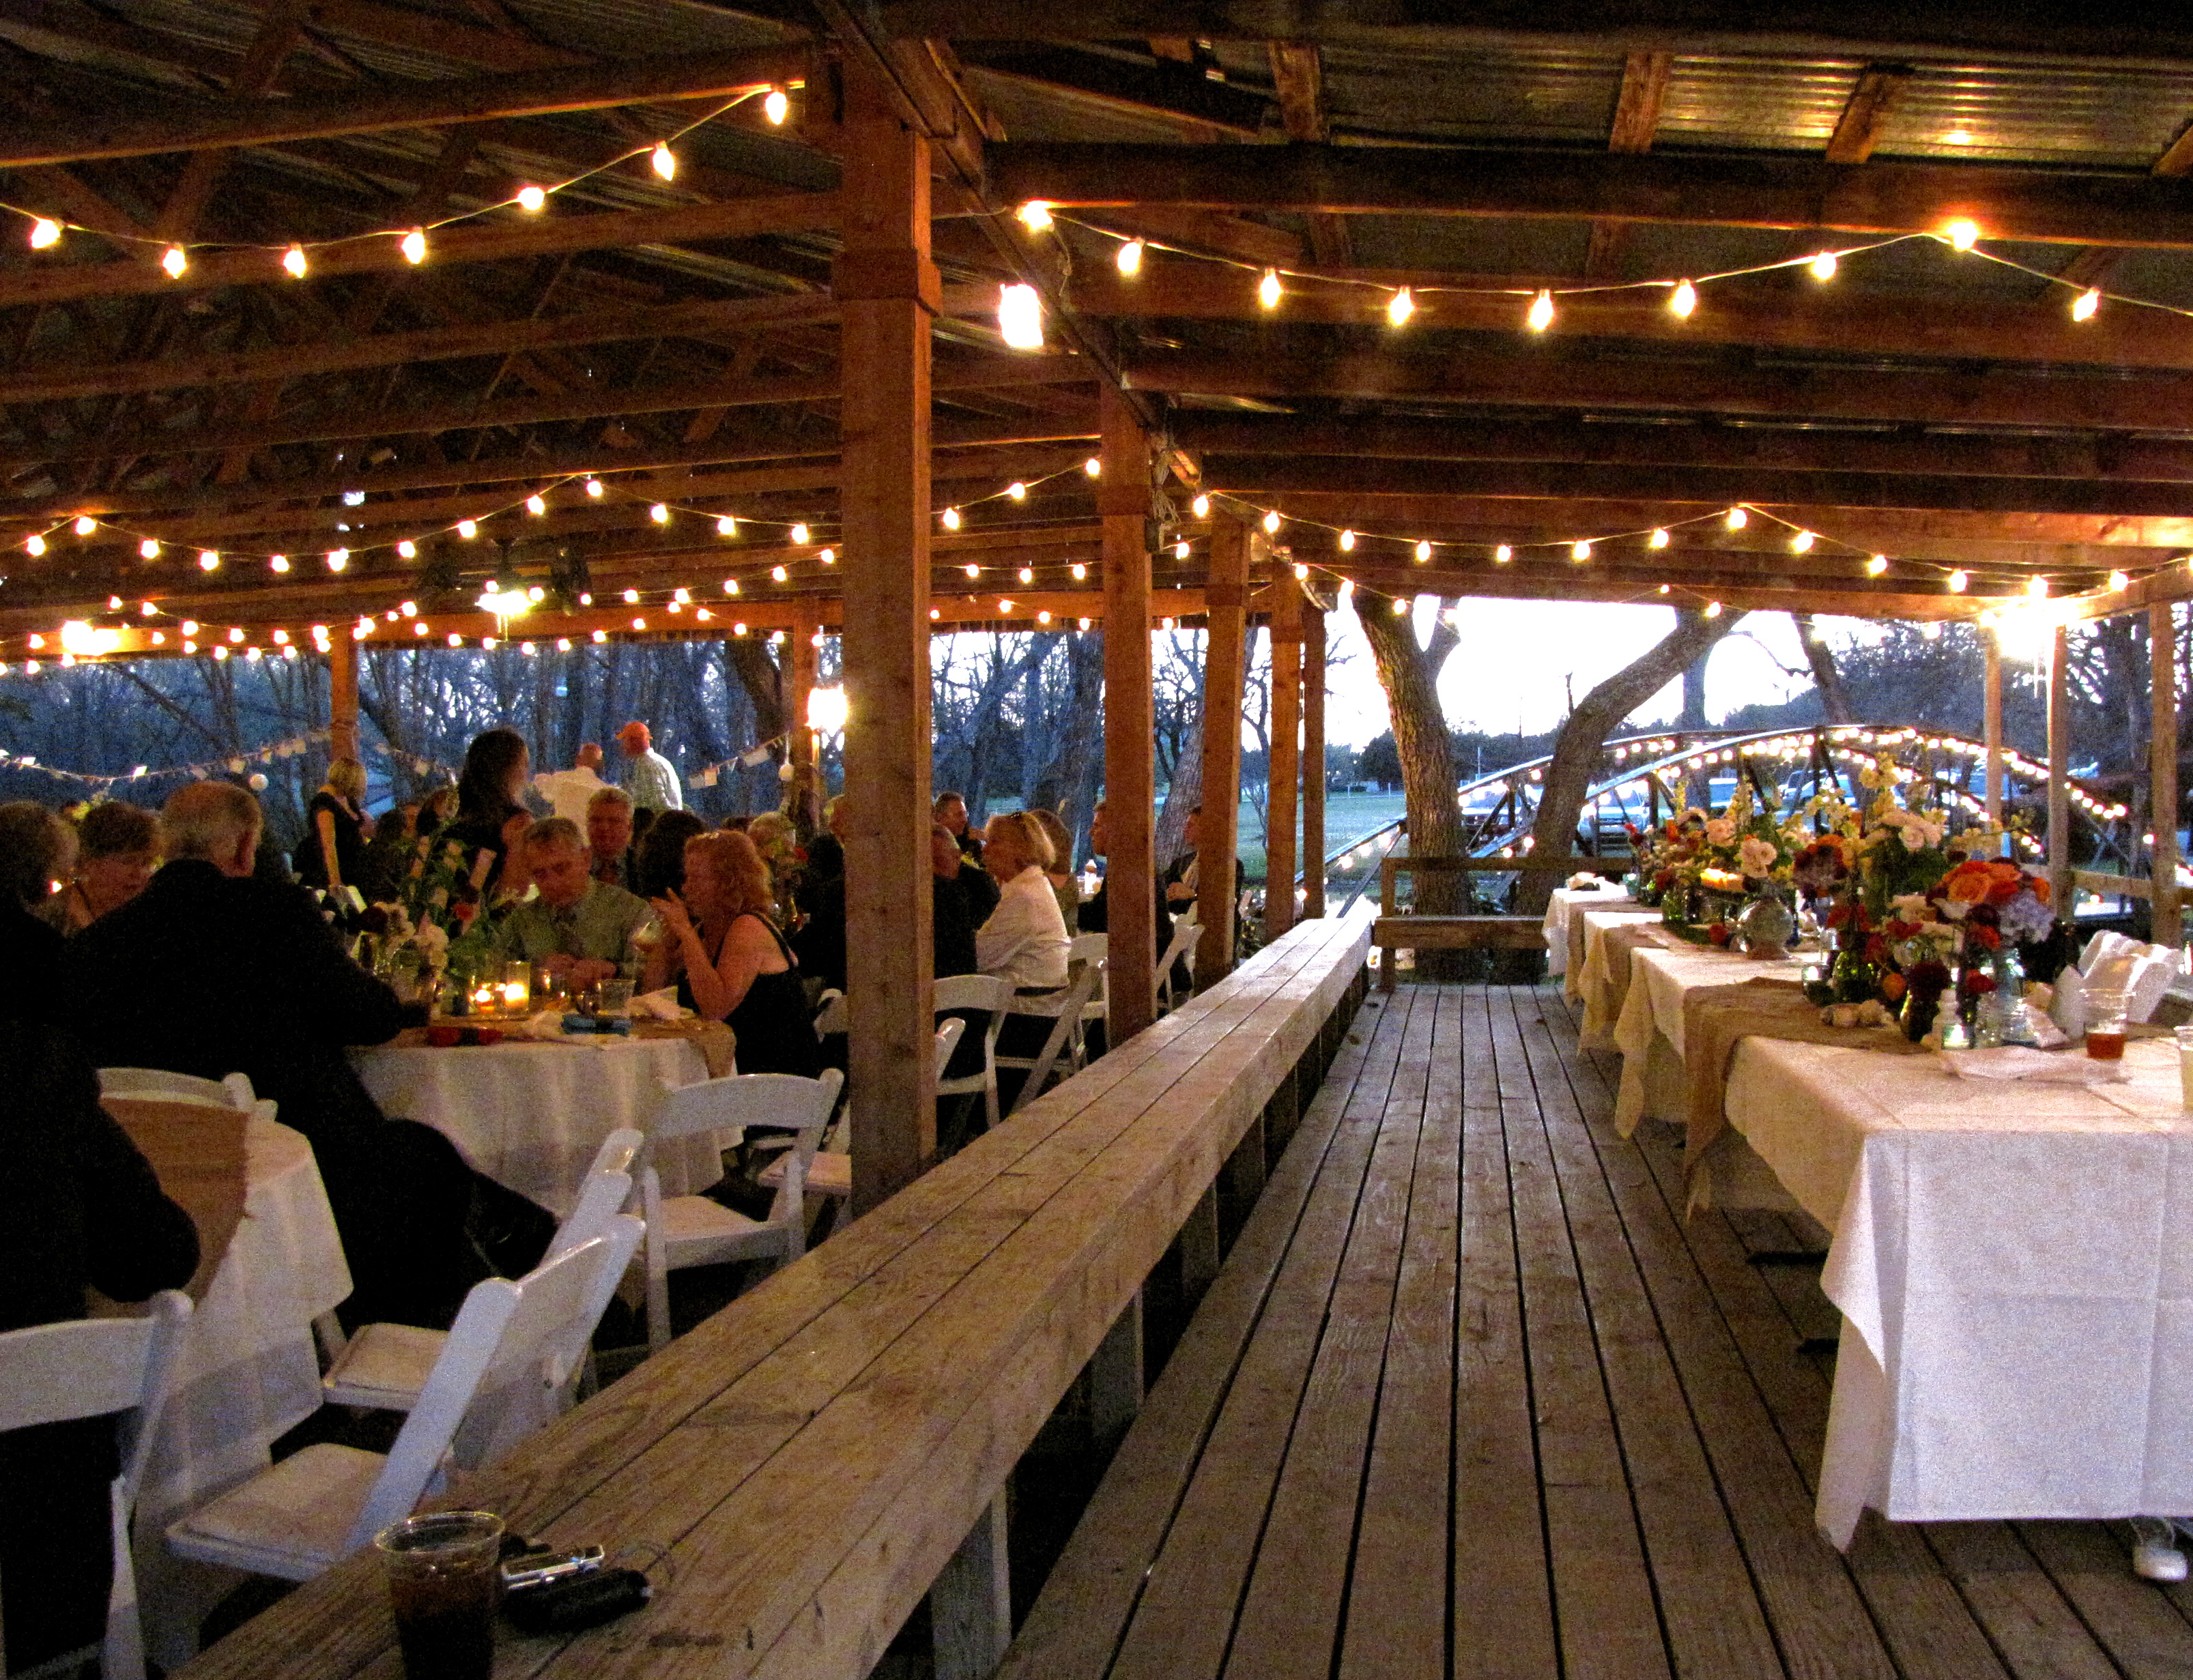 Wedding outdoor lights - 11 ways methods to make sure your ...